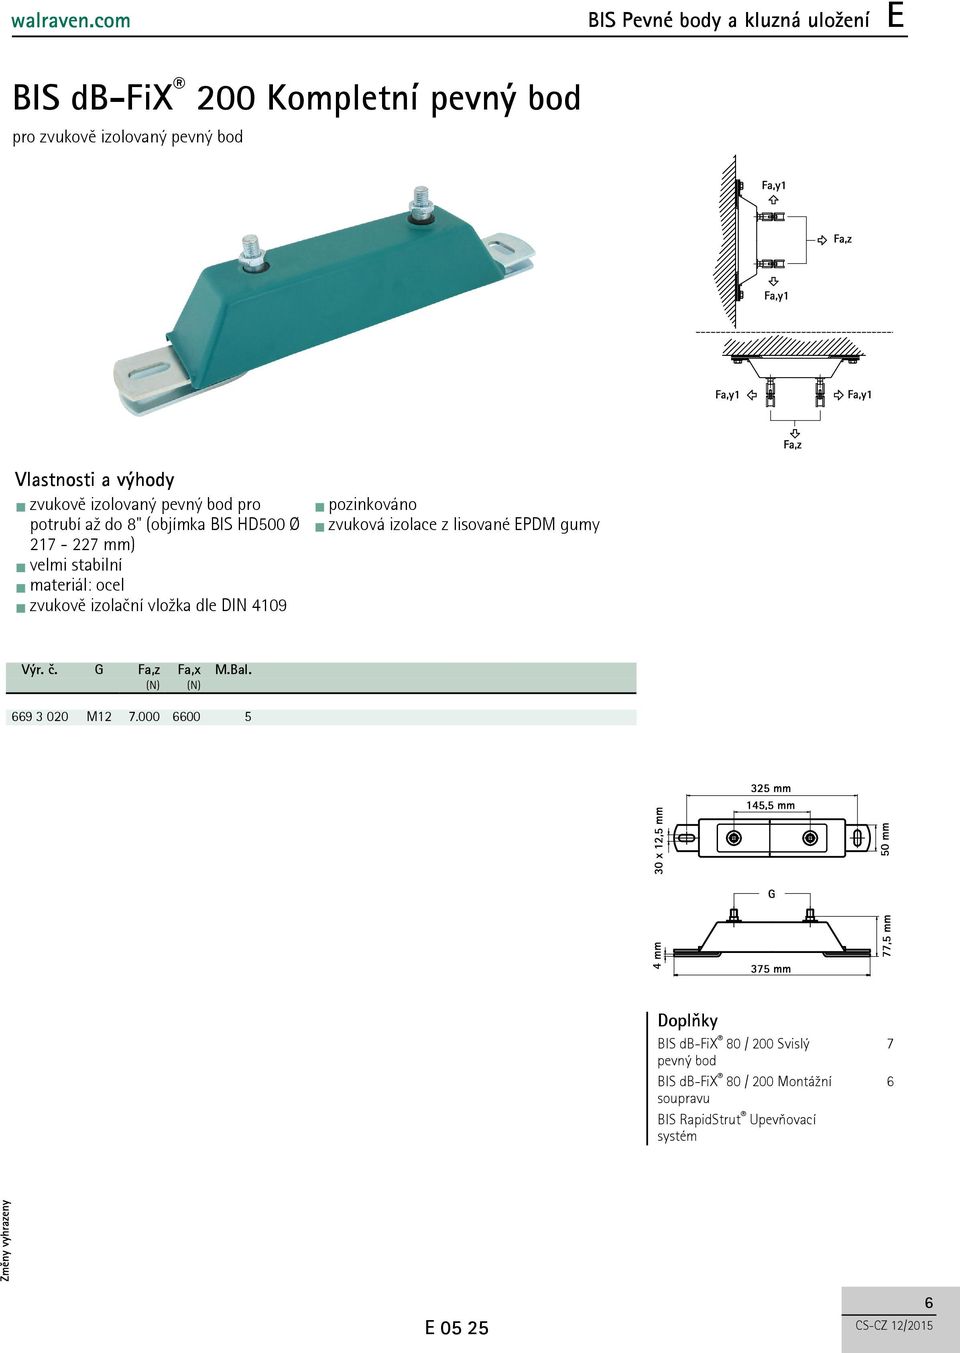 DIN 409 zvuková izolace z lisované EPDM gumy Výr. č. G Fa,z Fa,x M.Bal. (N) (N) 669 3 020 M2 7.